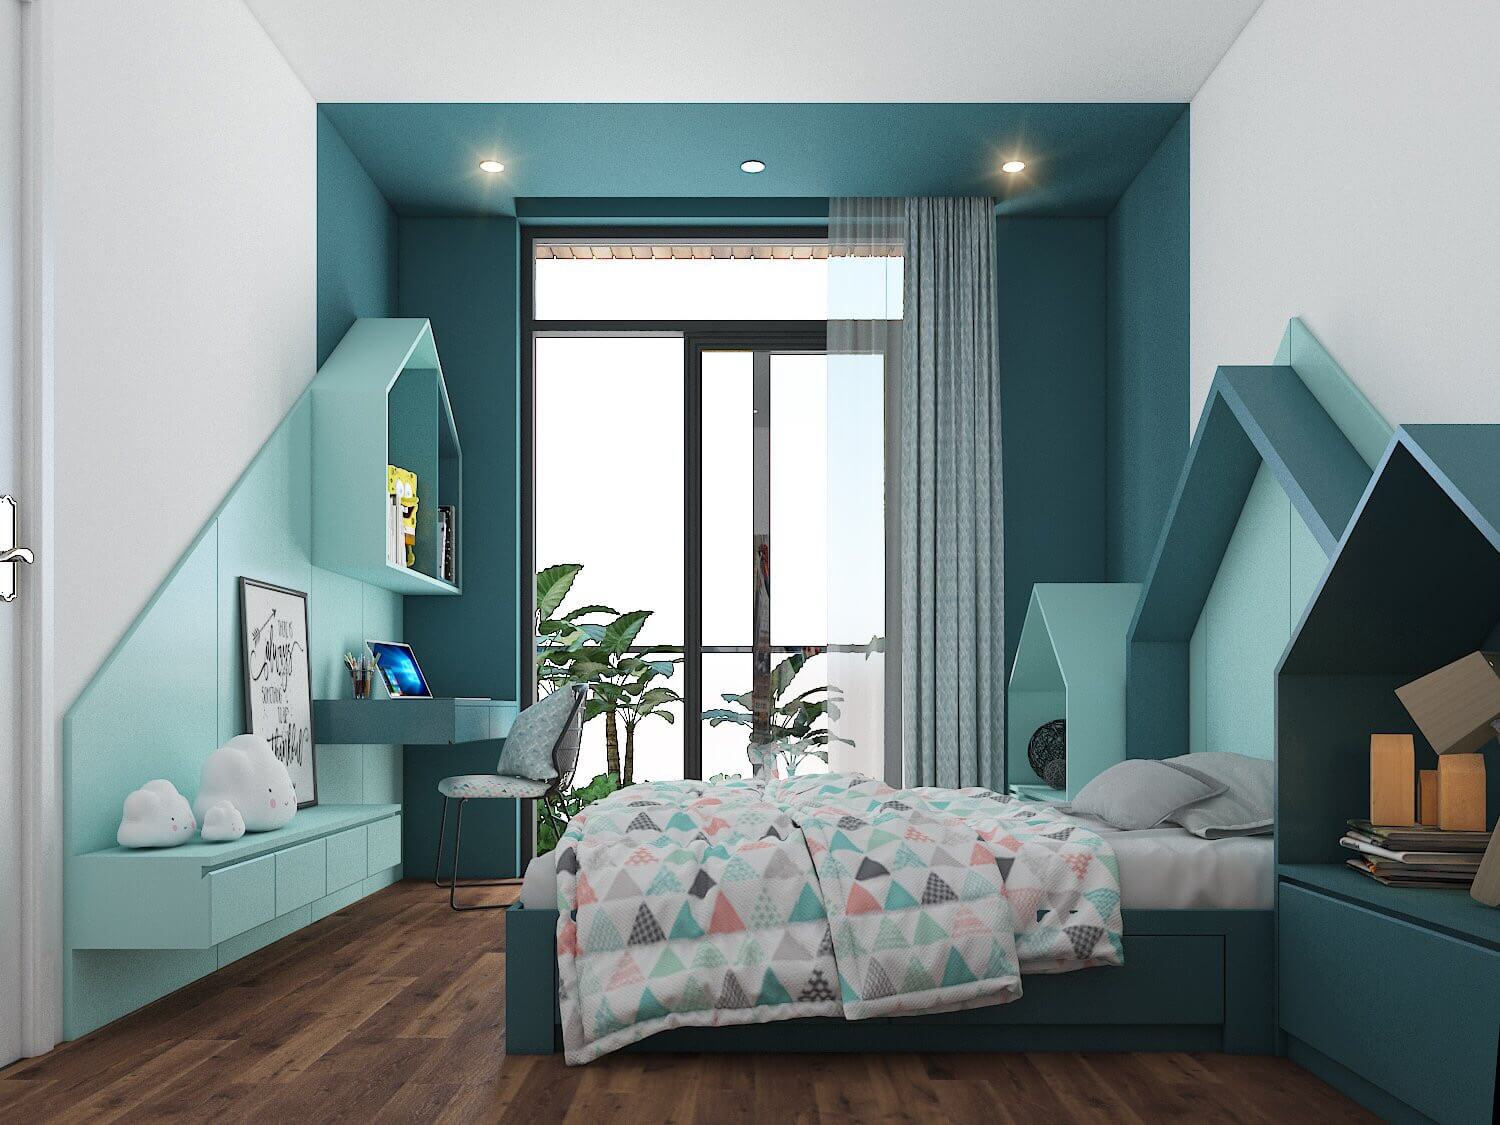 Phòng ngủ, phong cách Hiện đại Modern, thiết kế concept nội thất, nhà phố Quận 4